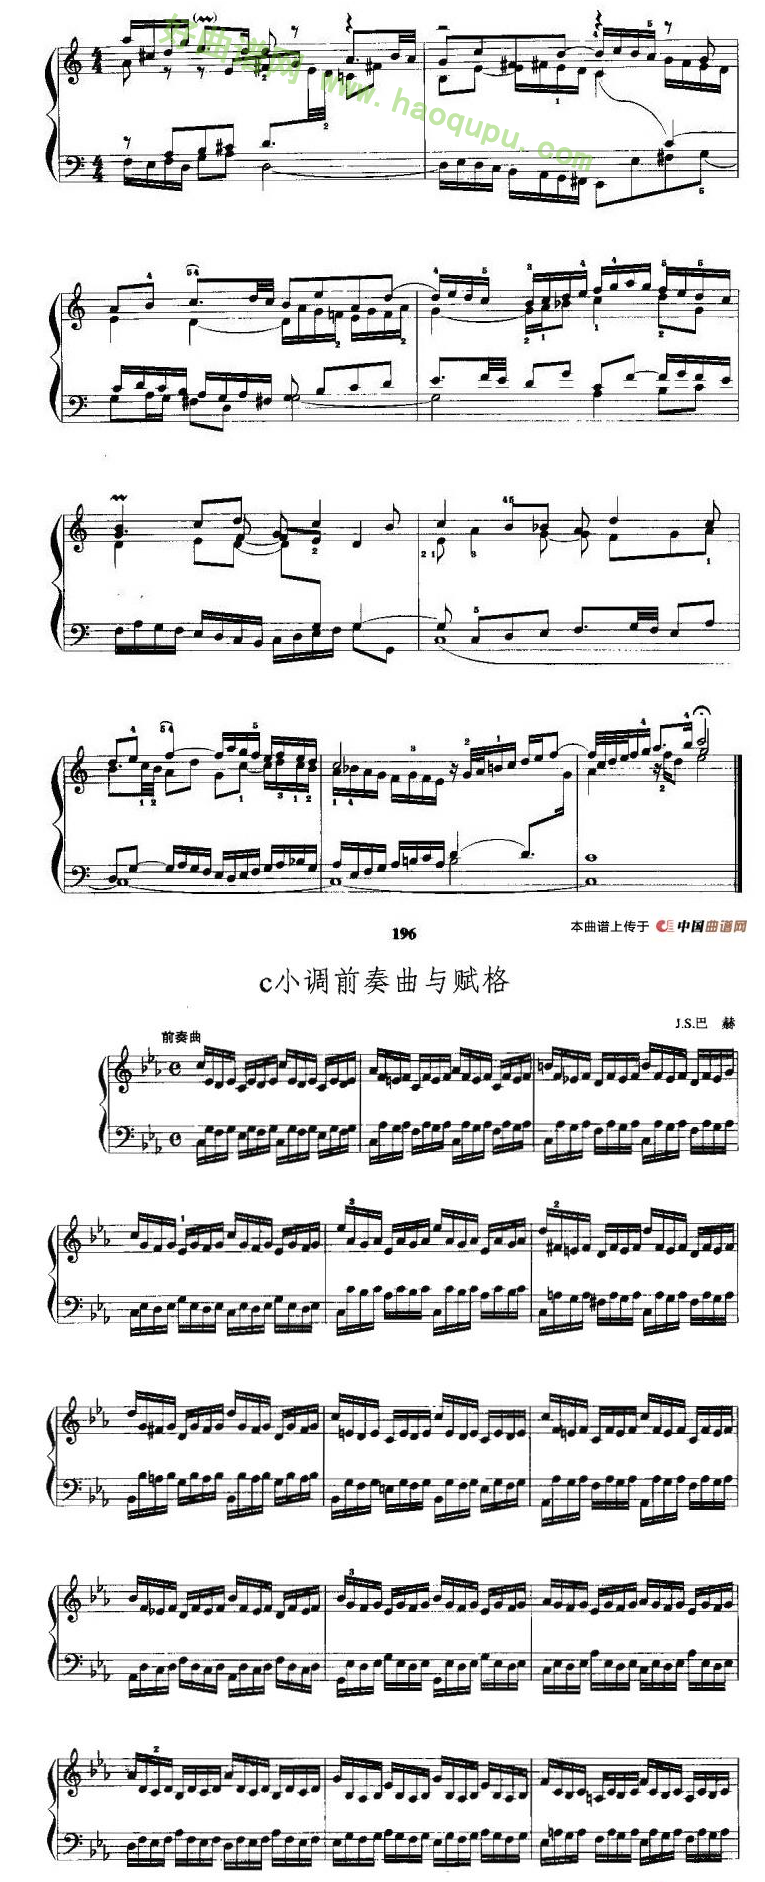 《c小调前奏曲与赋格》 手风琴曲谱第3张